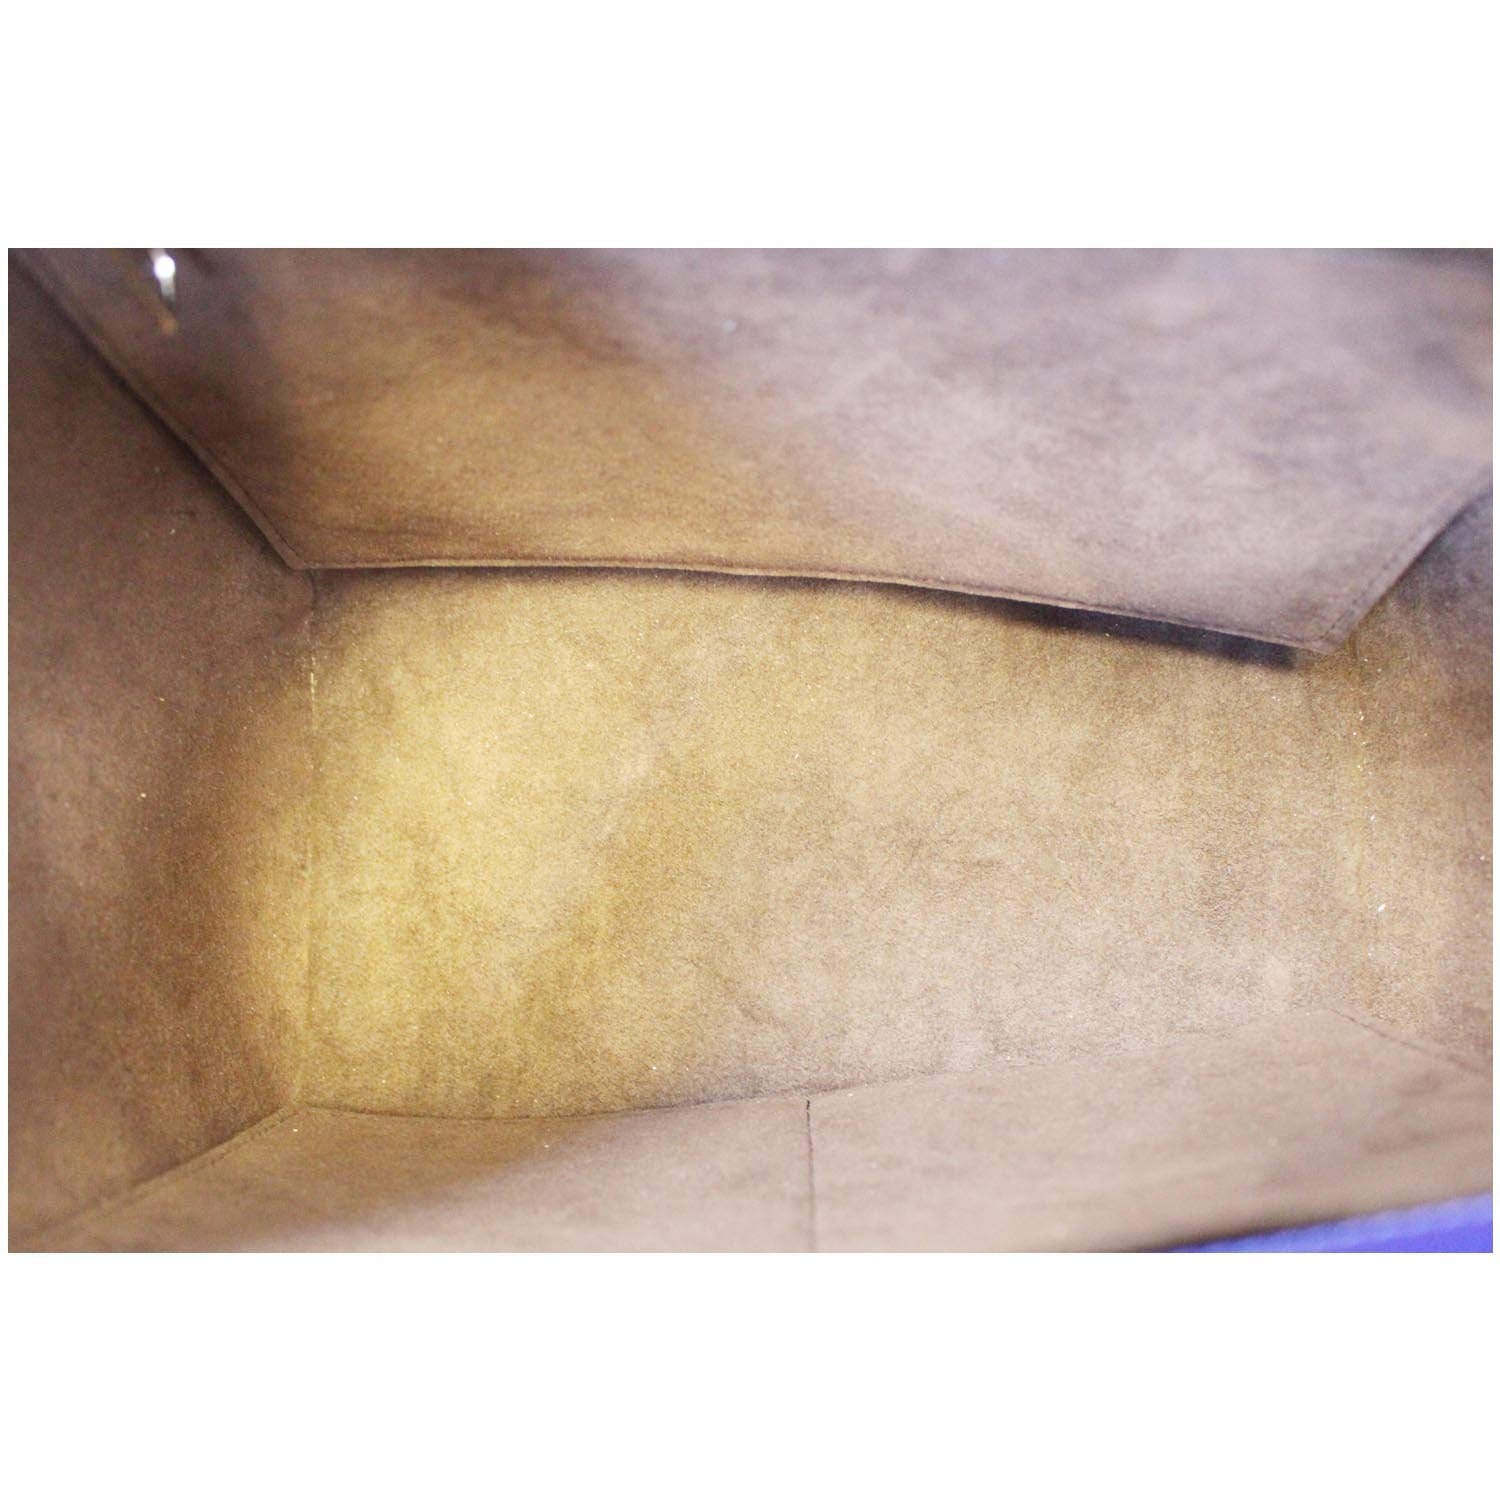 Phenix cloth handbag Louis Vuitton Brown in Cloth - 31974868